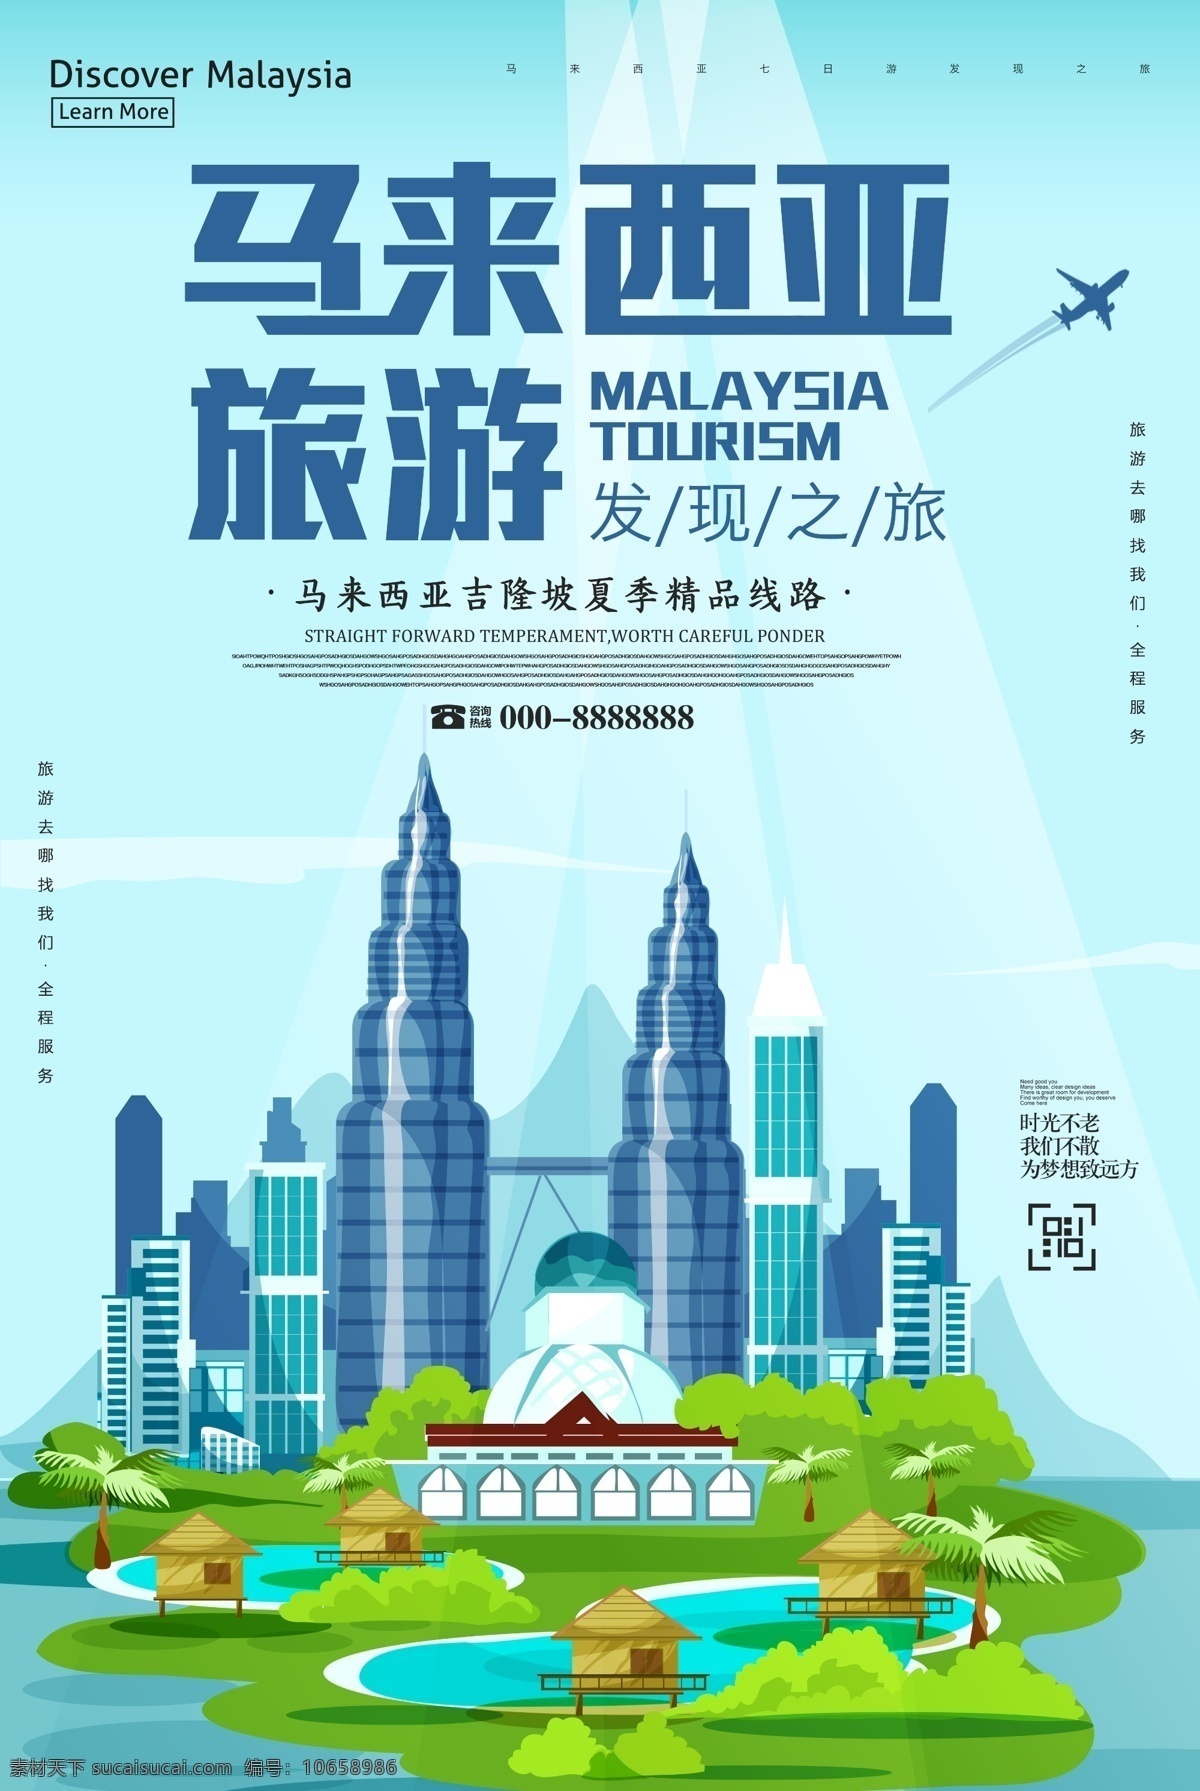 新马 泰 发现 之旅 马来西亚 旅游 海报 海报背景 创意海报 创意背景 时尚海报 海报图片 海报素材 海报模板 卡通海报 模板下载 设计创意海报 免费 免费模板 免费素材 平面素材 旅游之旅